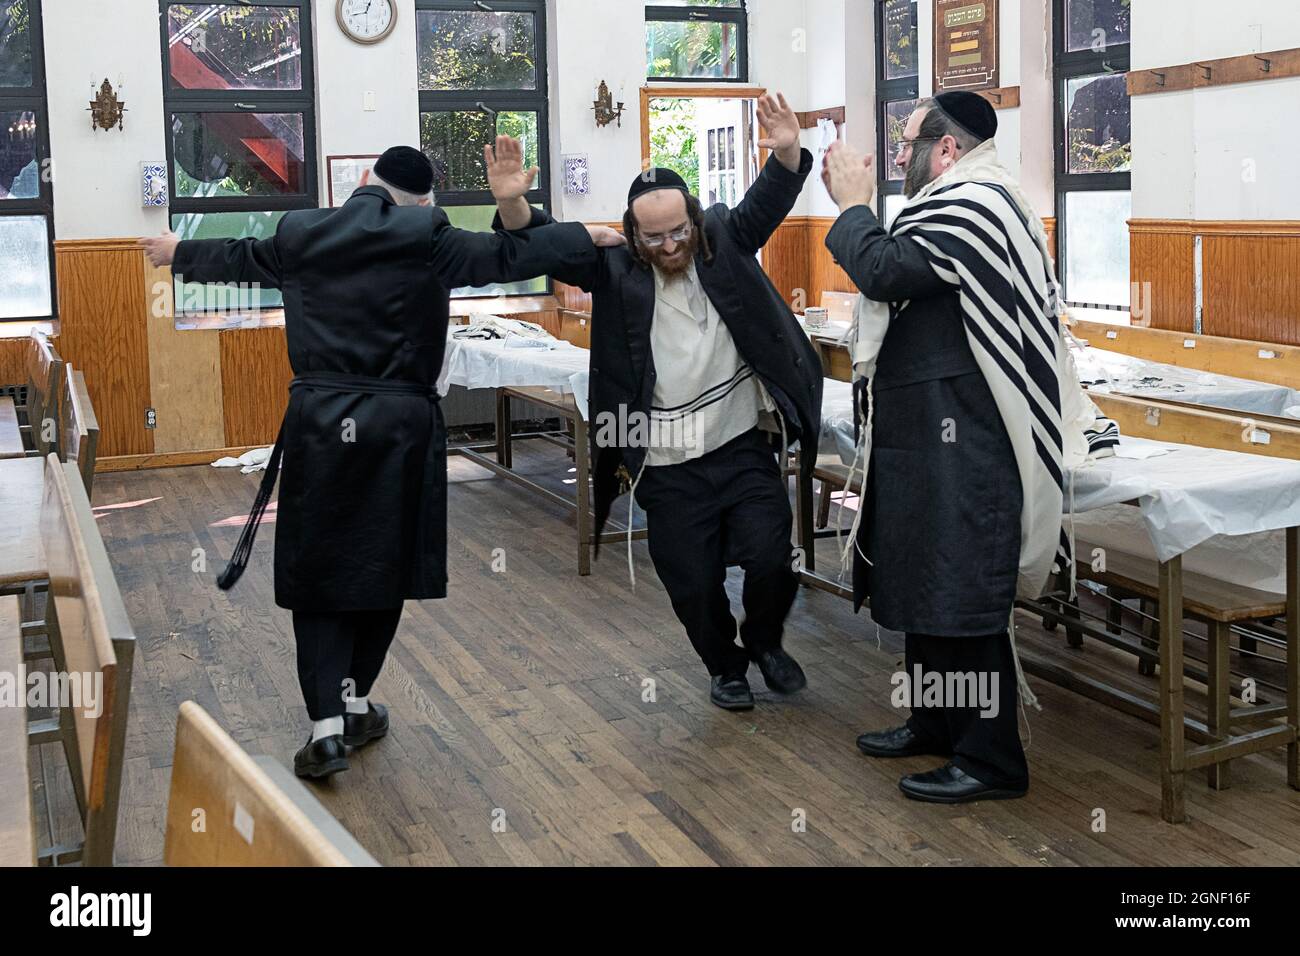 Los judíos ortodoxos bailan para celebrar la fiesta alegre de Sukkos. En una sinagoga en Williamsburg, Brooklyn, Nueva York. Foto de stock